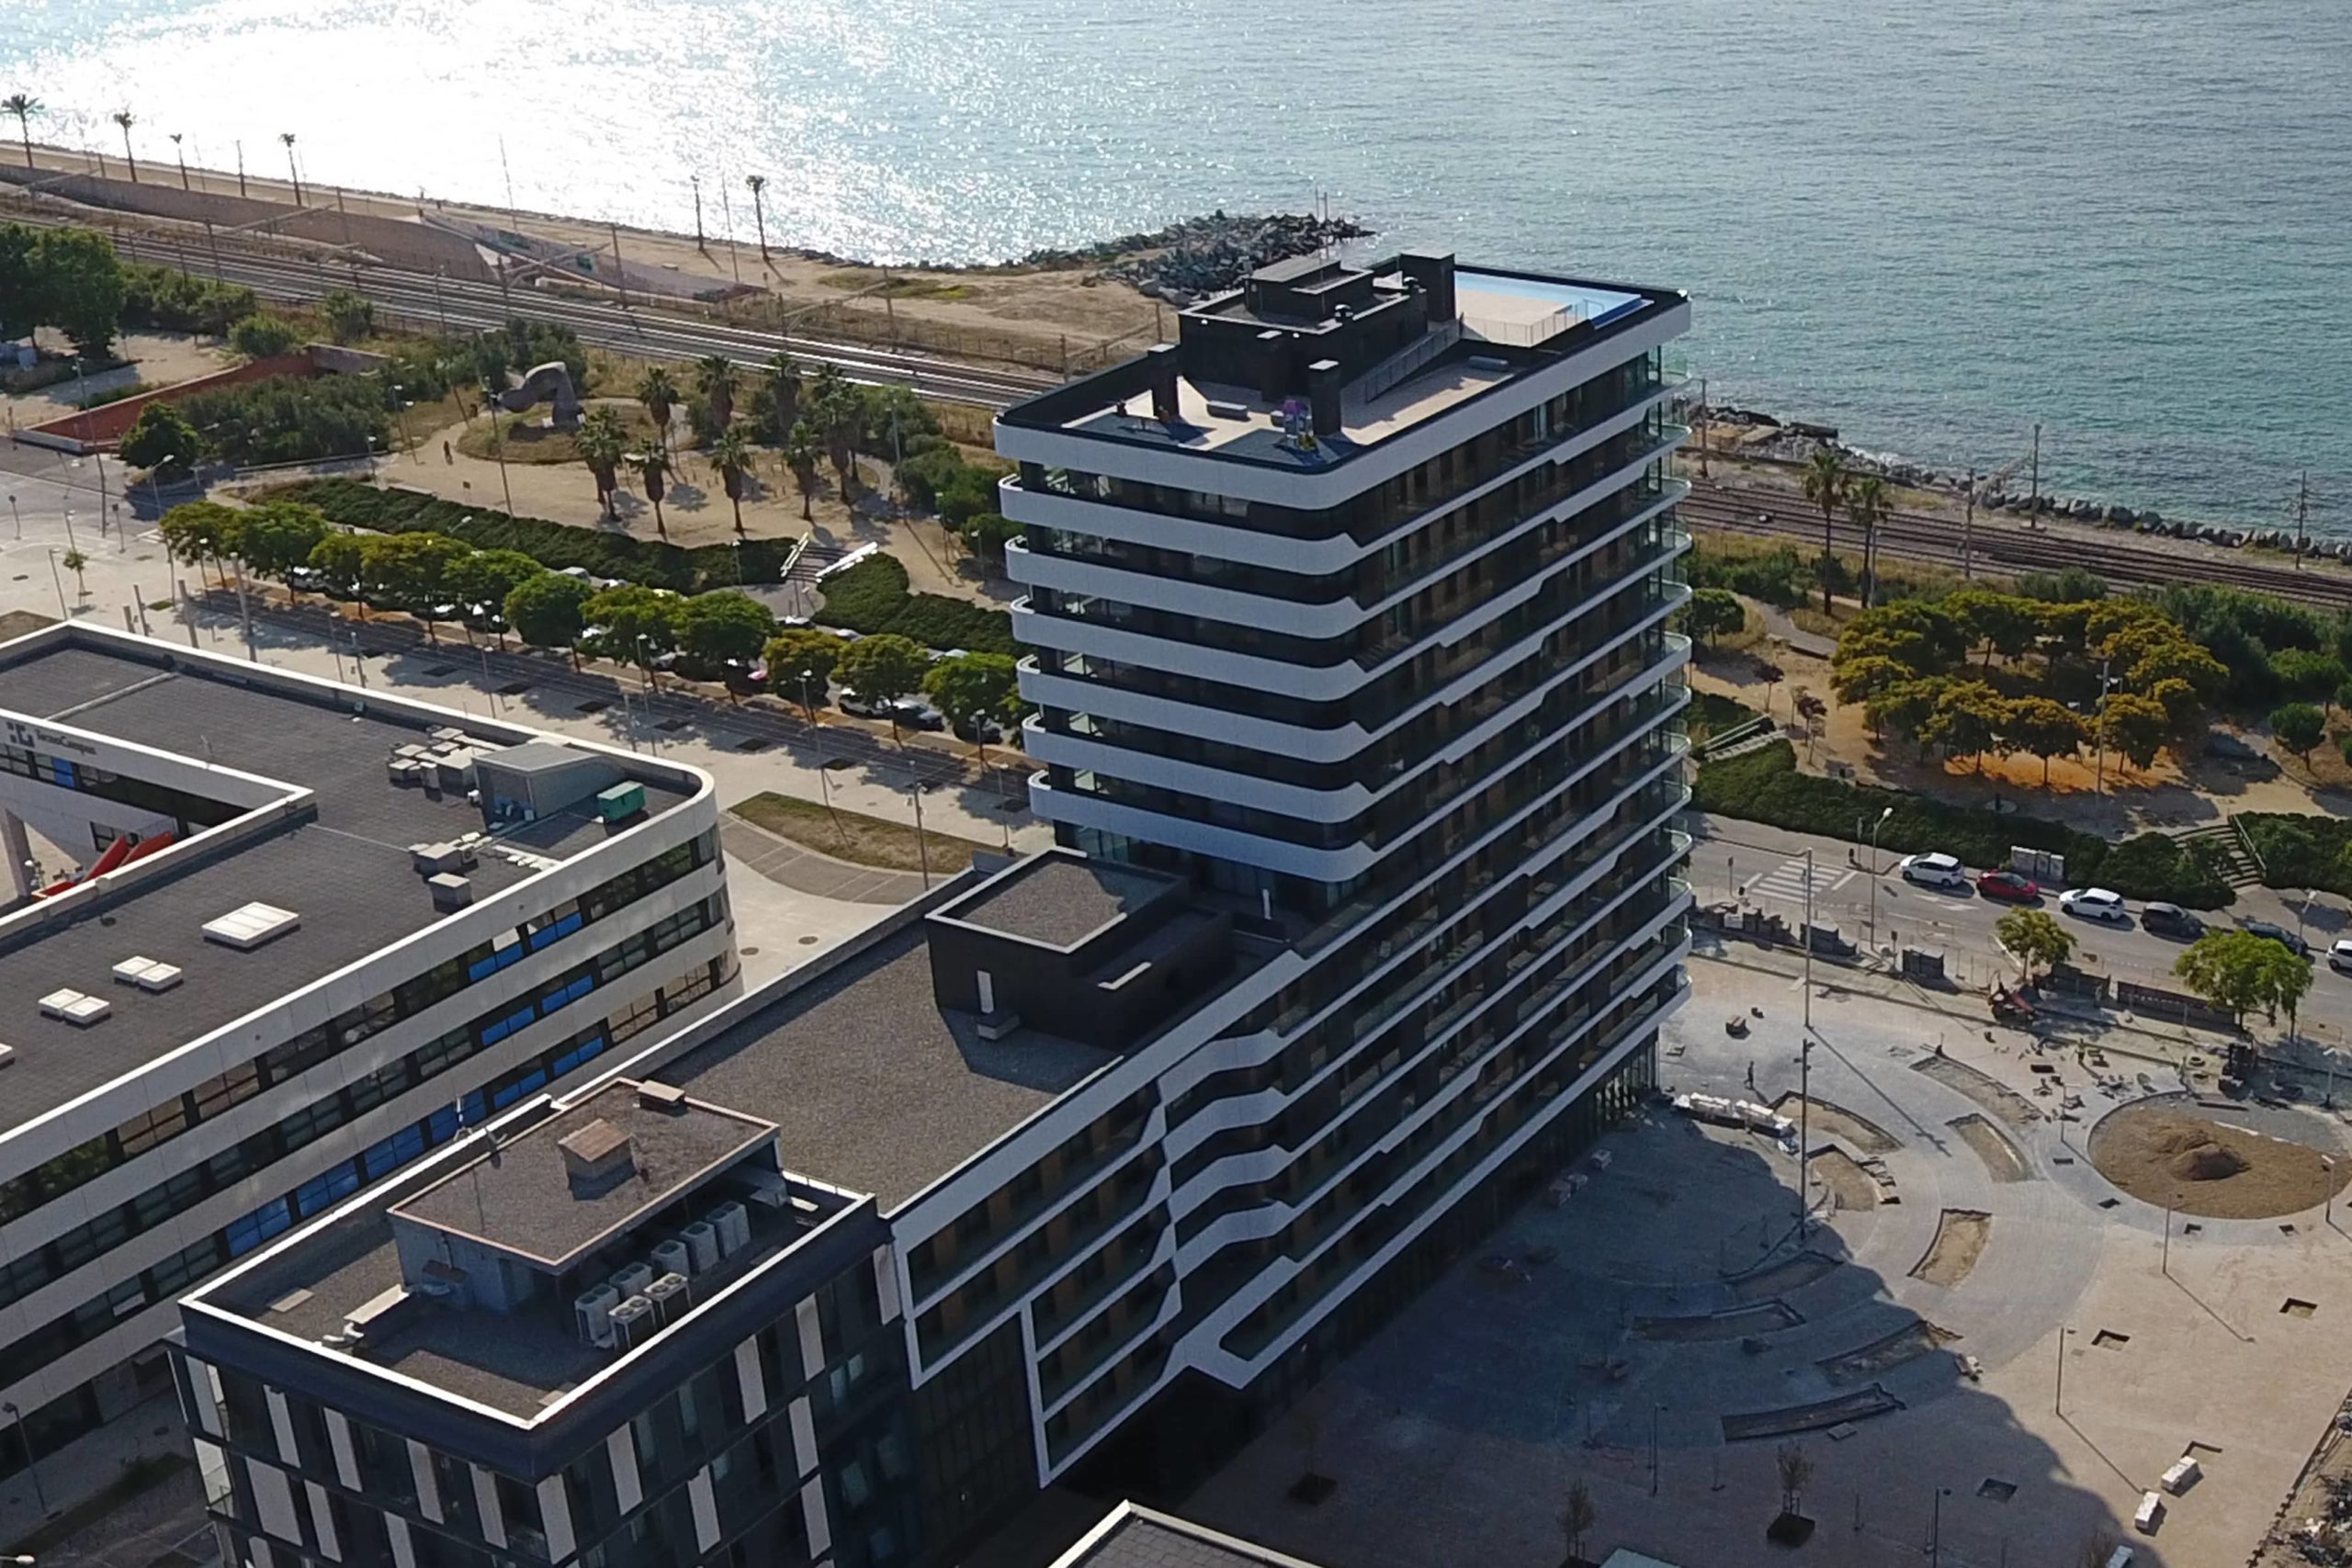 Torre residencial, ubicada en Mataró, quiere ser un referente arquitectónico. El proyecto ha sido desarrollado con la tecnología BIM.